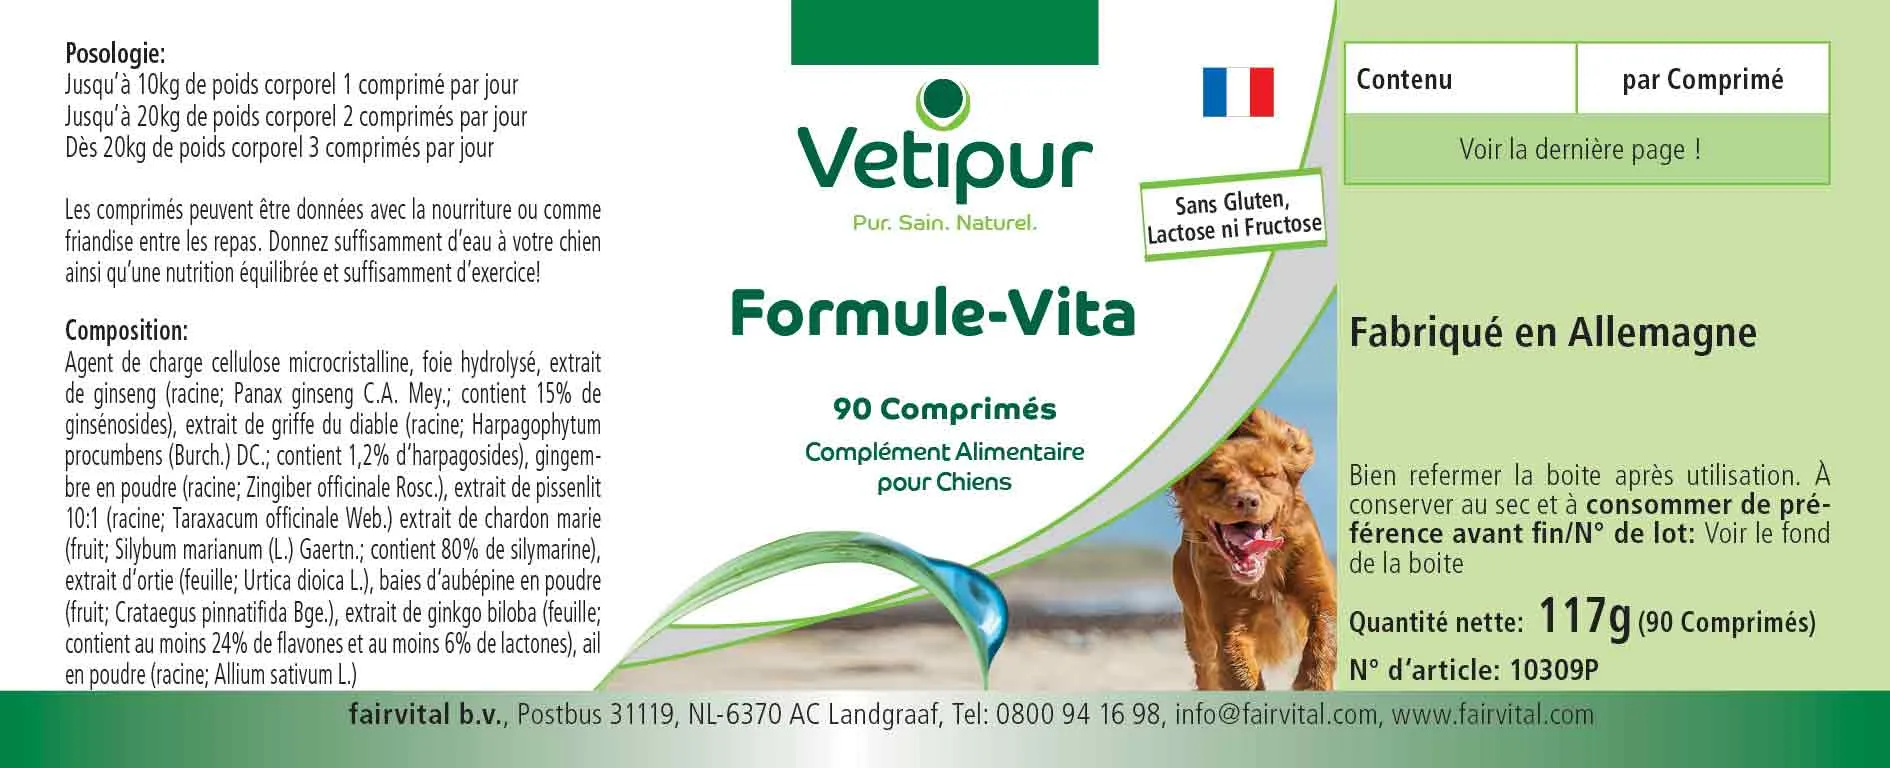 Formule Vitalité - 90 comprimés pour chiens | Vetipur